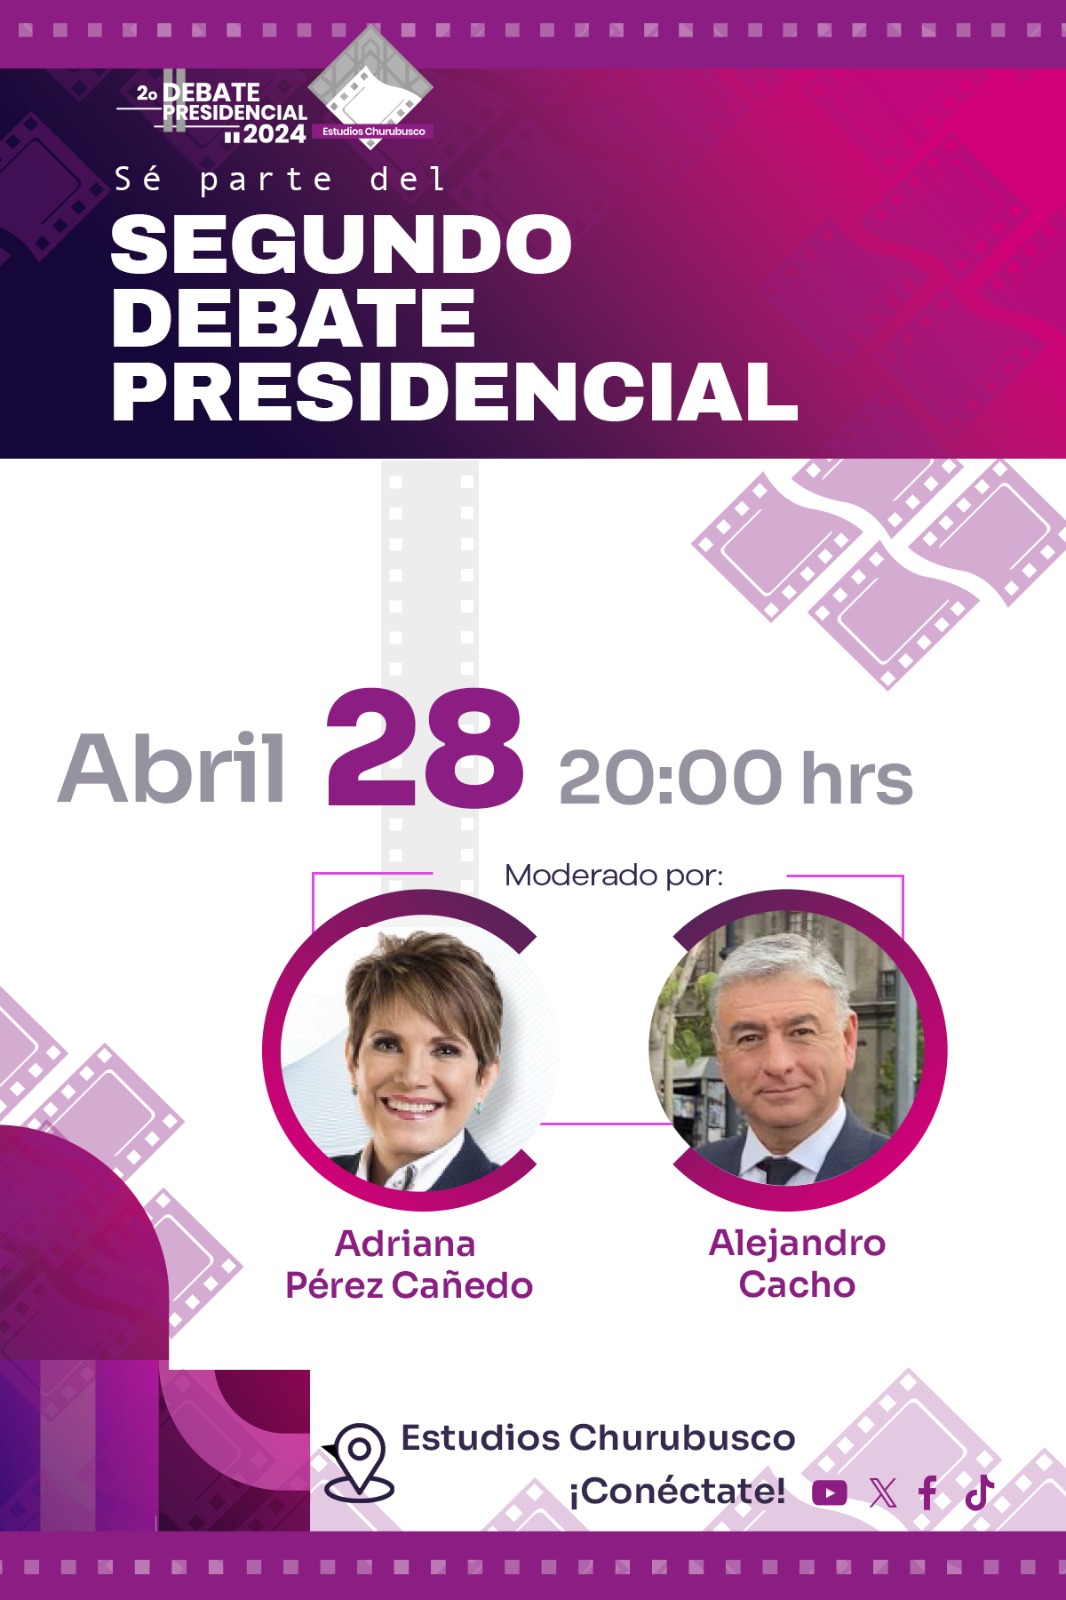 Los periodistas Adriana Pérez Cañedo y Alejandro Cacho moderarán el segundo Debate del INE.